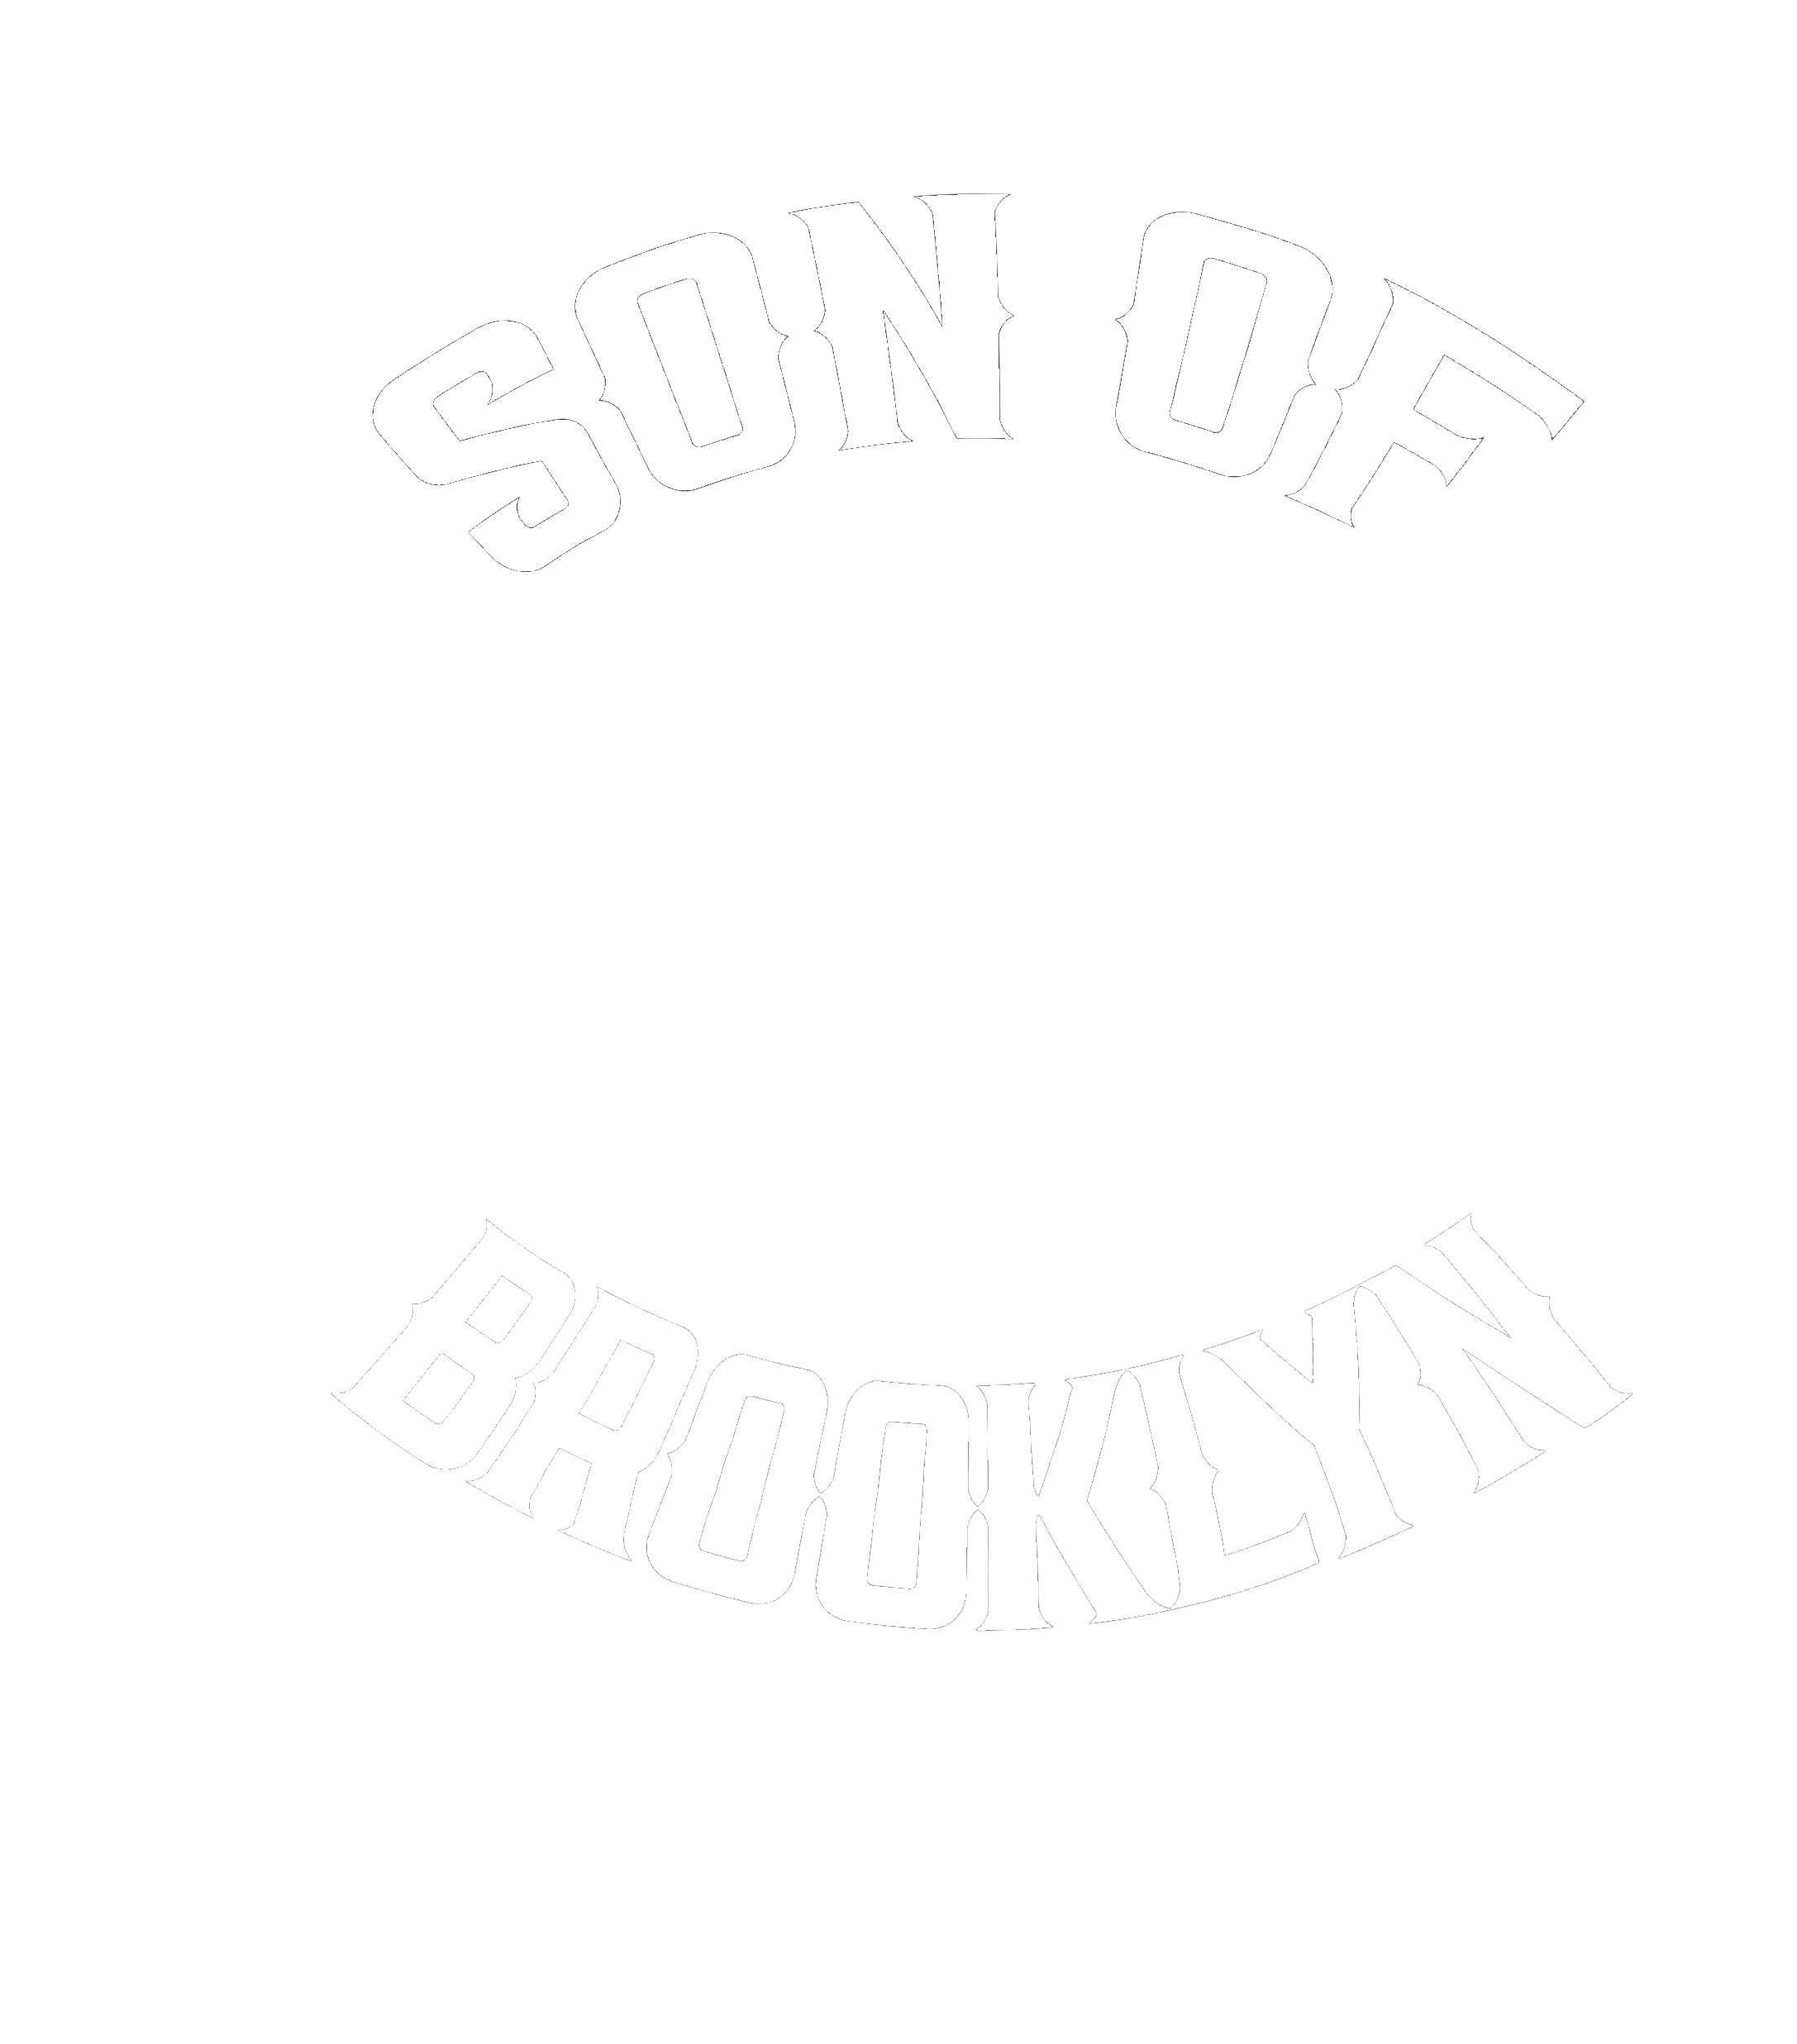 Son Of Brooklyn